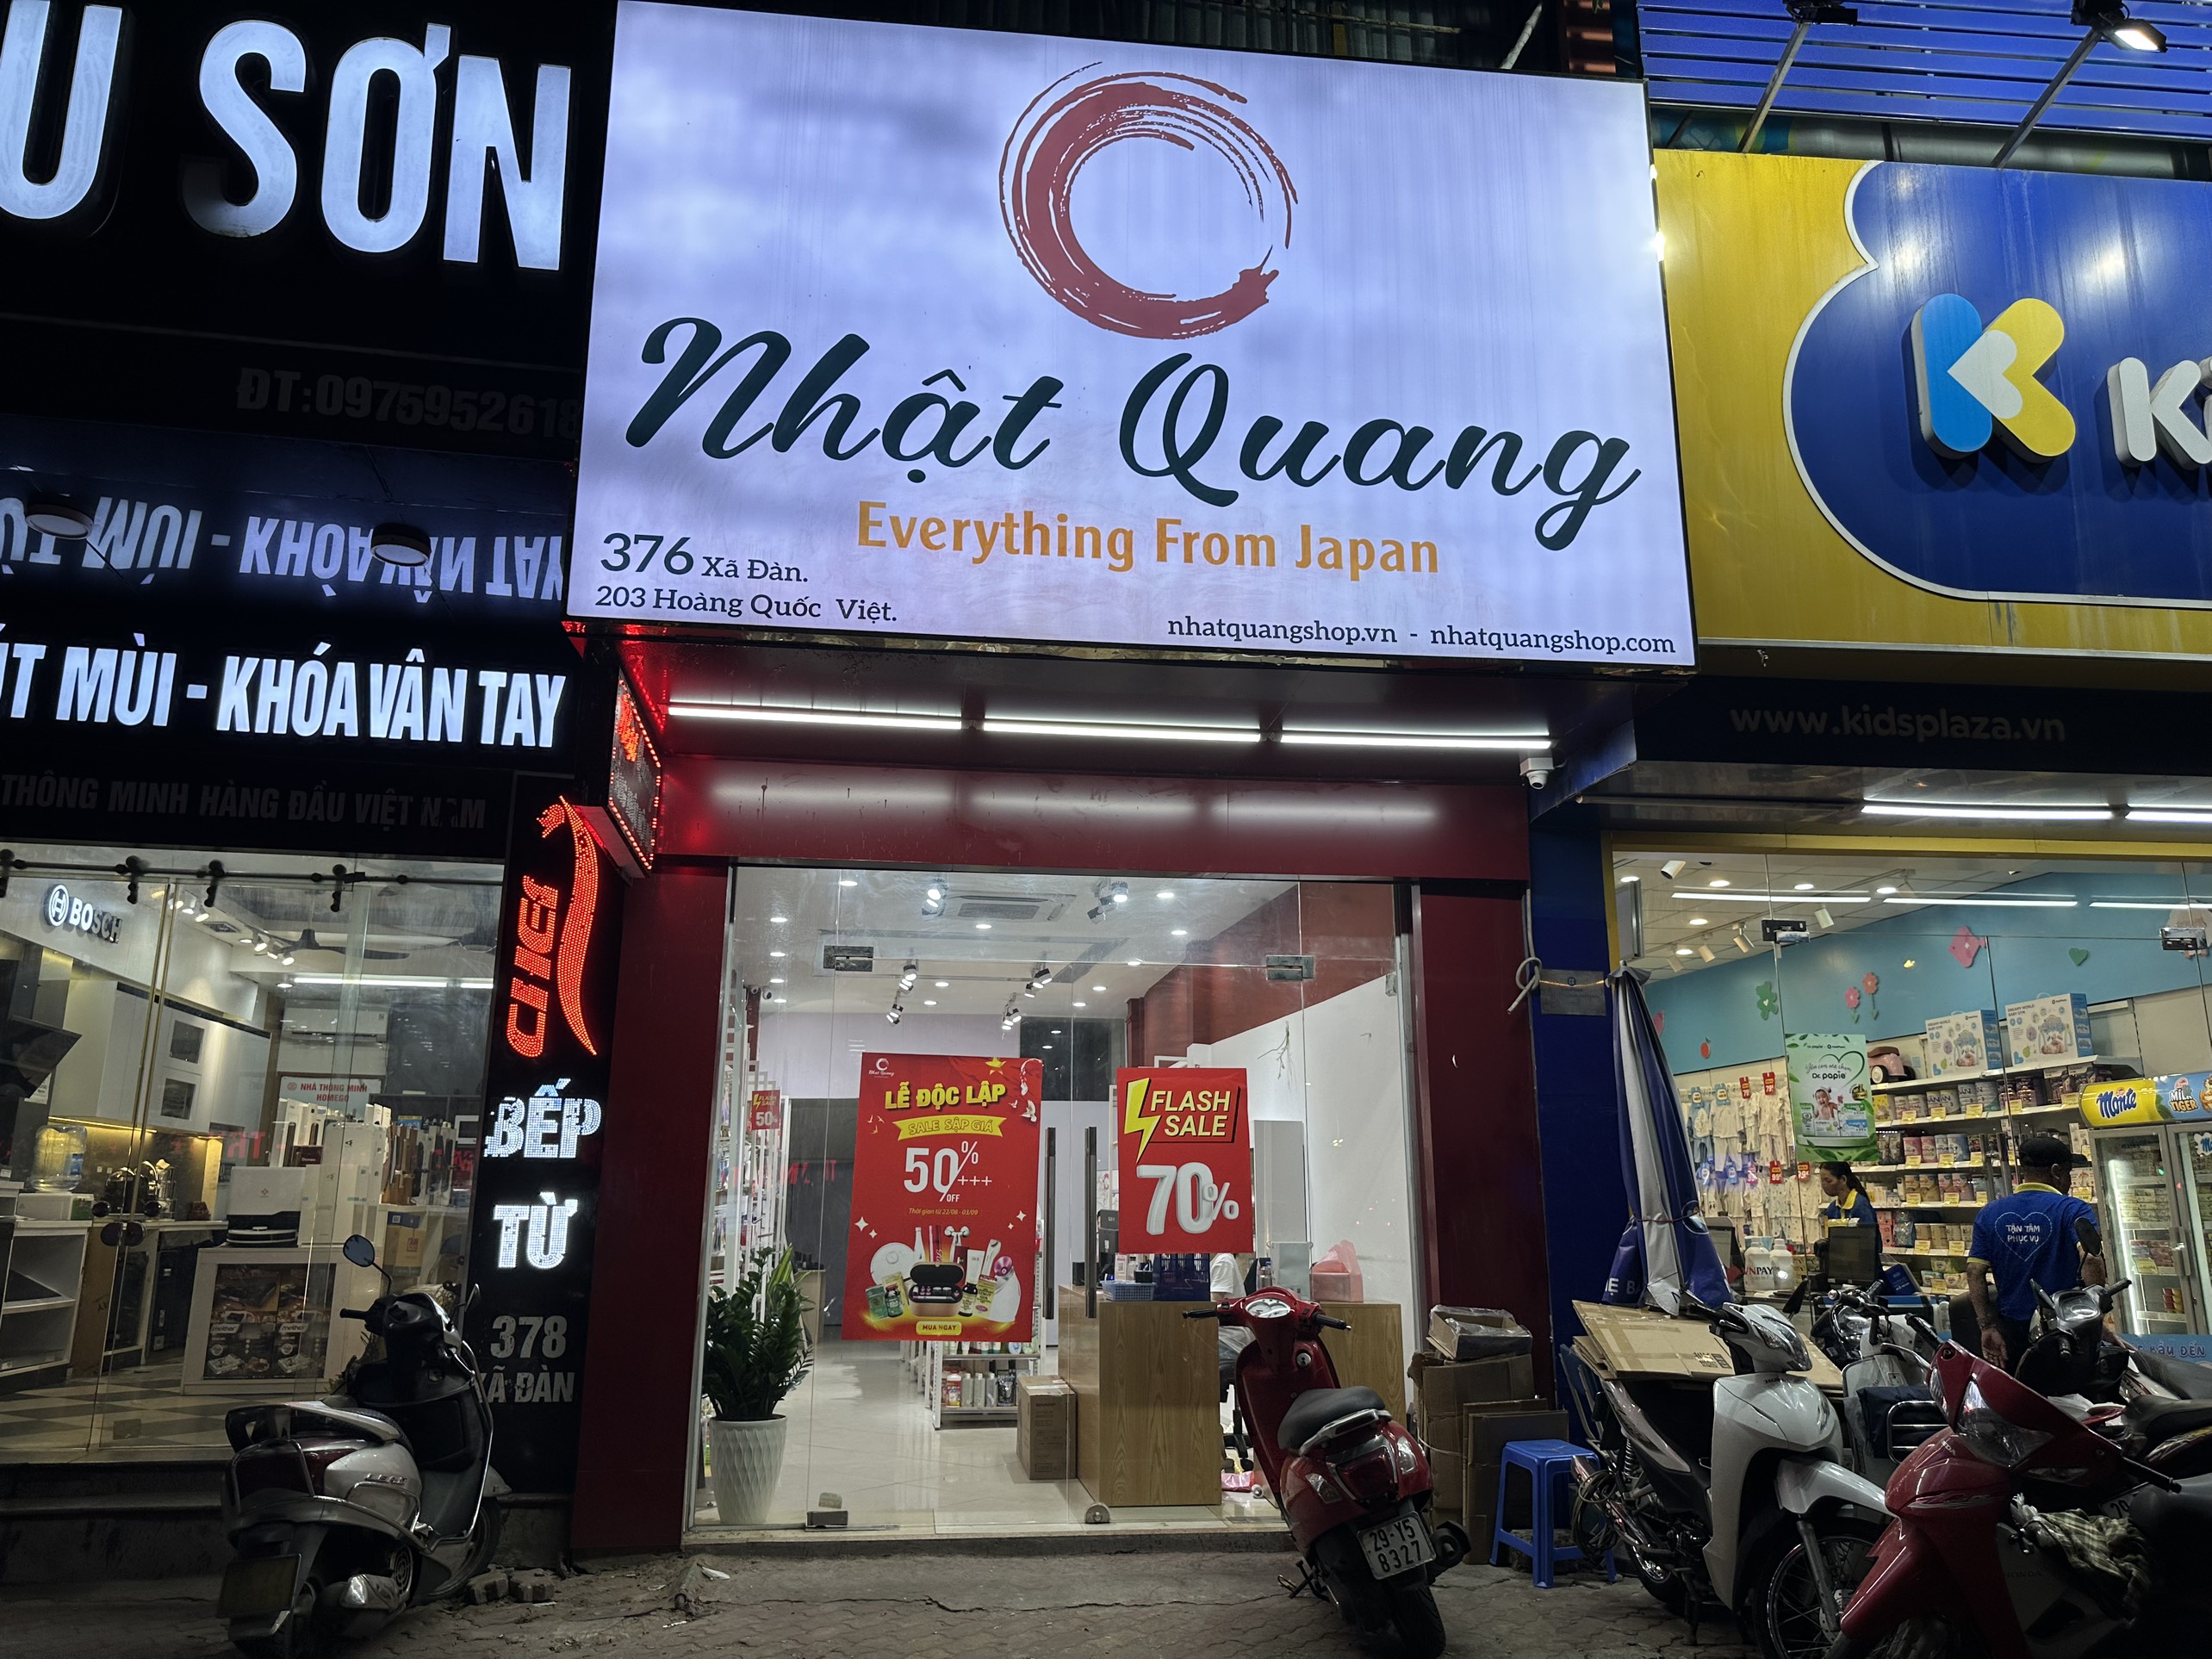 Hà Nội: Cửa hàng Nhật Quang kinh doanh hàng hoá không nhãn phụ tiếng Việt